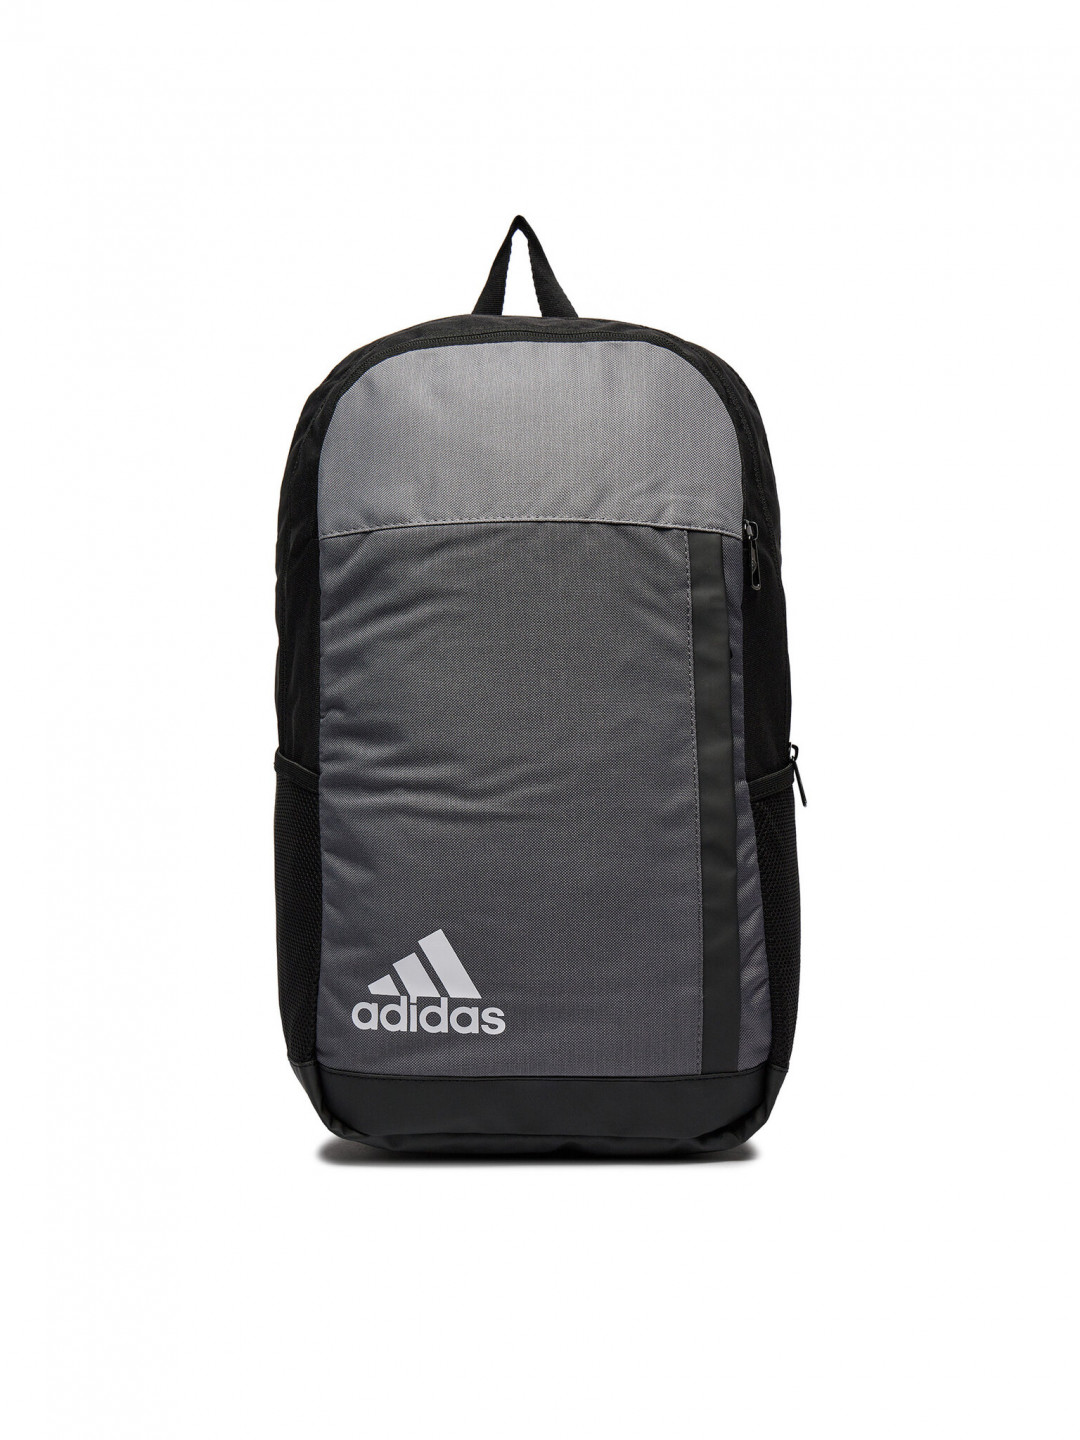 Adidas Batoh Motion Badge of Sport Backpack IK6890 Černá